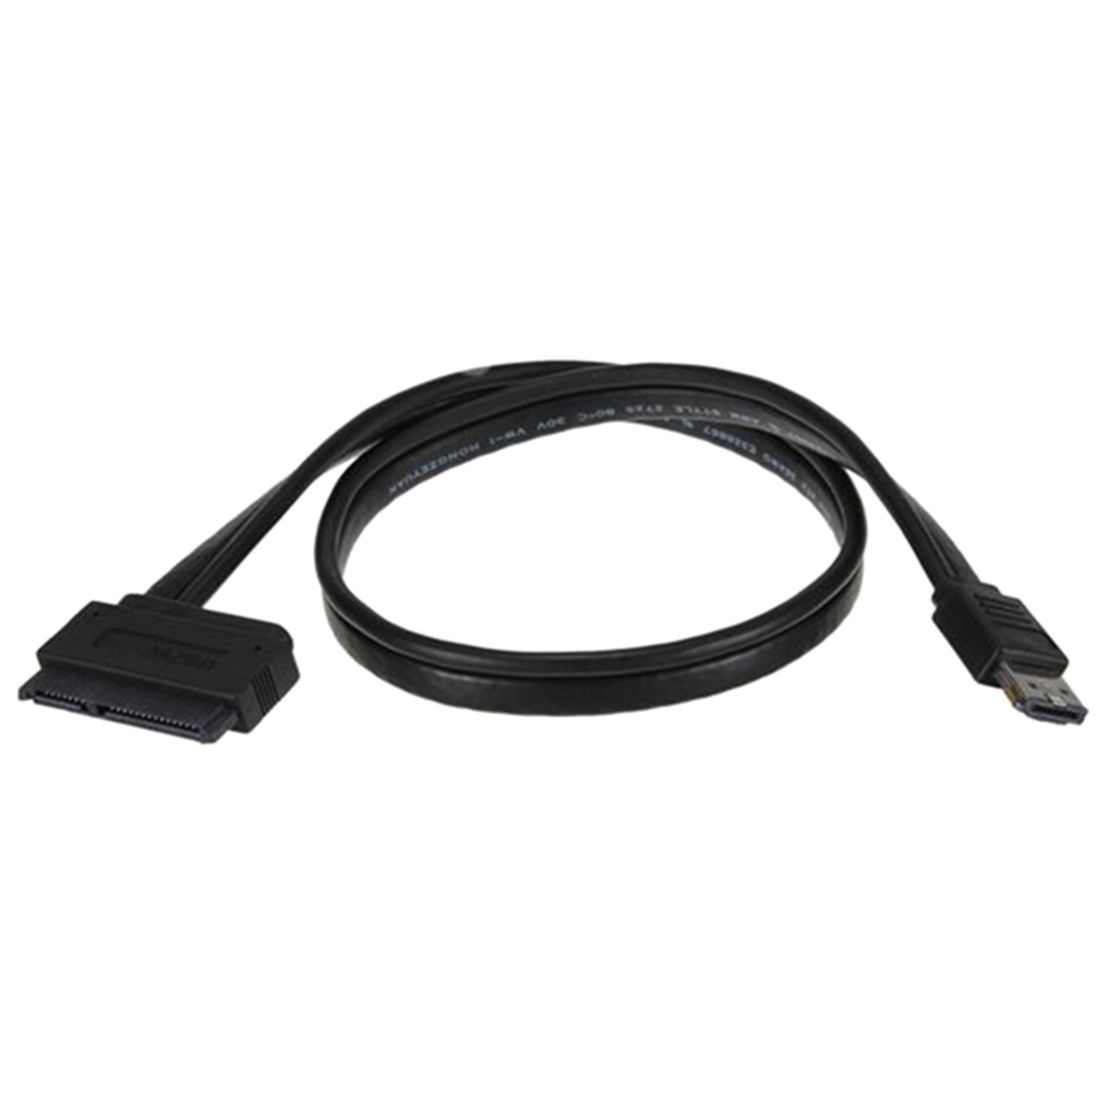 Power eSATA USB 12V 5V Combo to 22Pin SATA USB Hard Disk Cable Adapter
